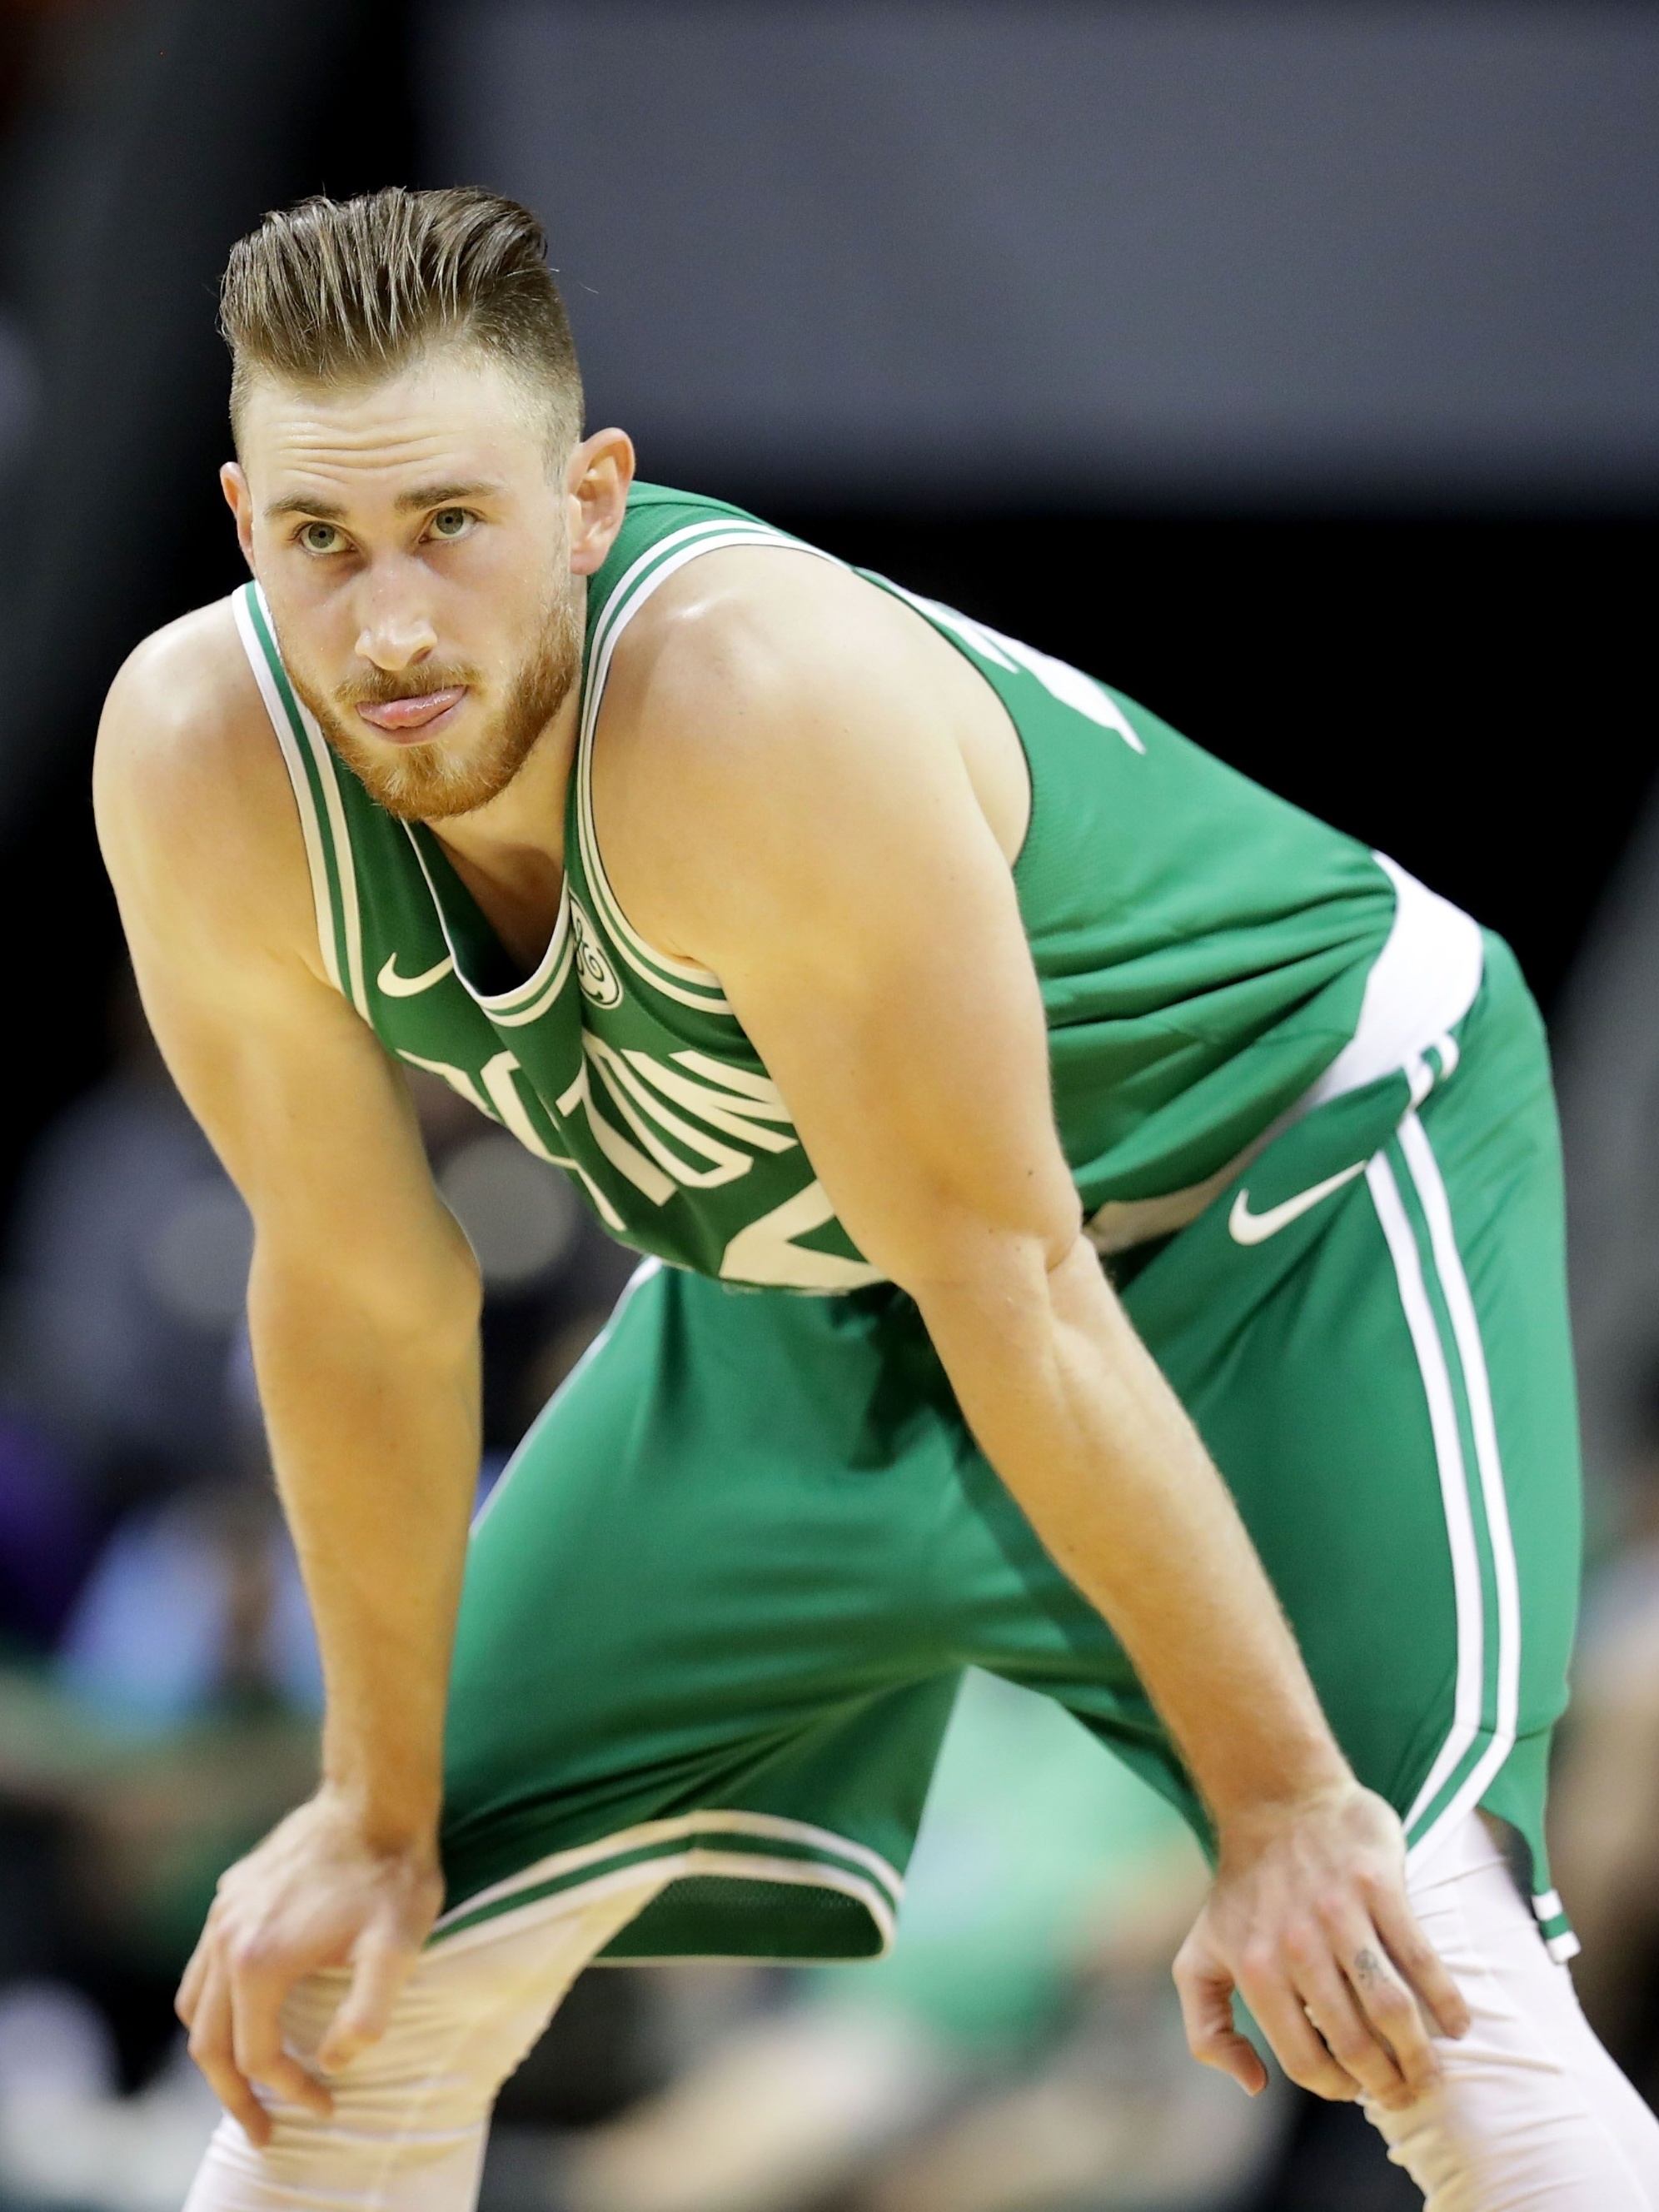 Mulher de Gordon Hayward deixa ameaça no regresso do jogador dos Celtics -  NBA - Jornal Record